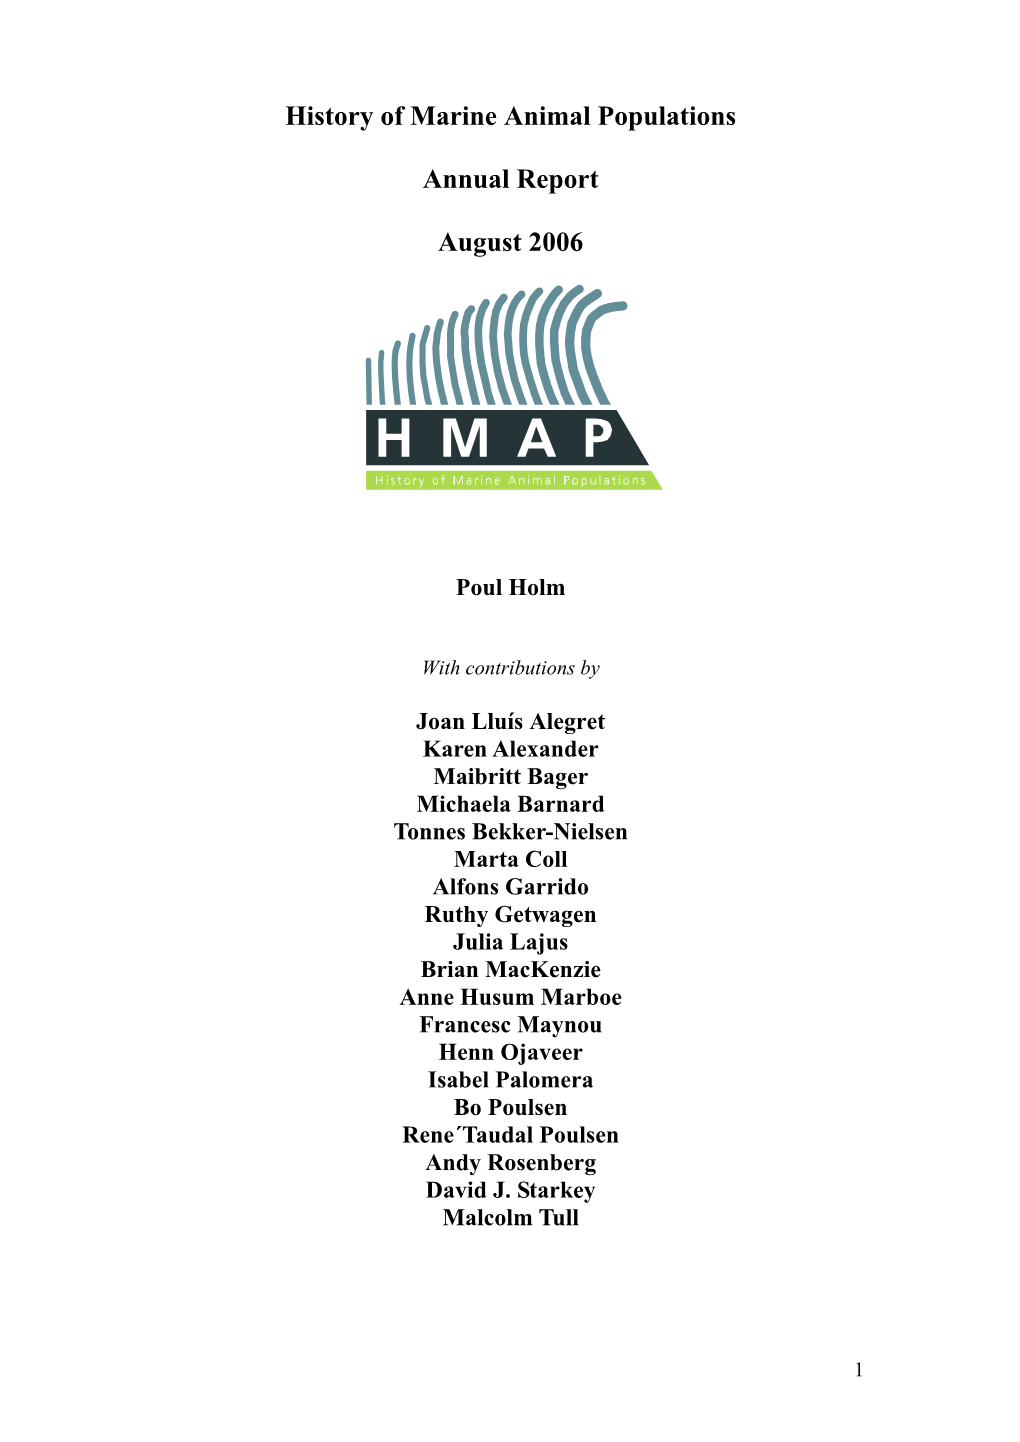 HMAP Annual Report 2006